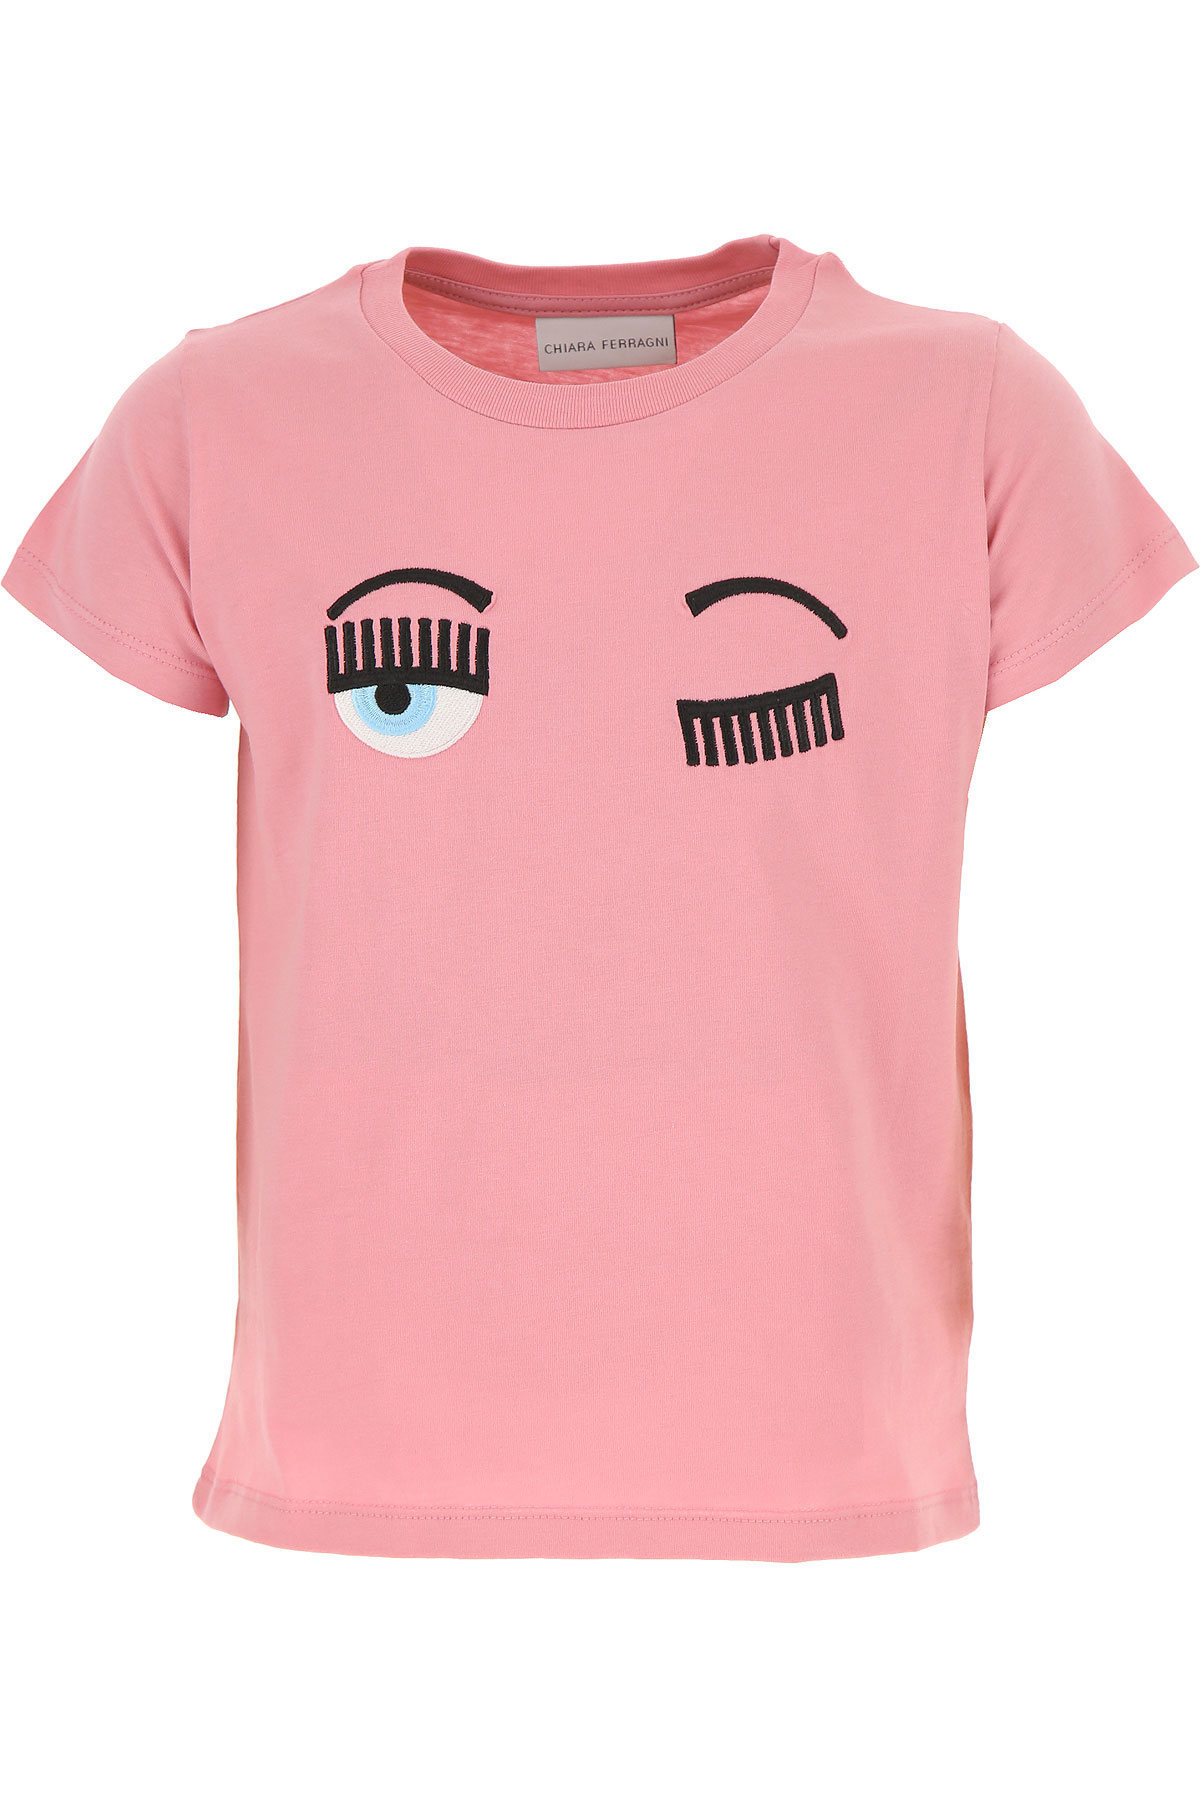 Chiara Ferragni Kinder T-Shirt für Mädchen Günstig im Sale, Pink, Baumwolle, 2017, 12Y 14Y